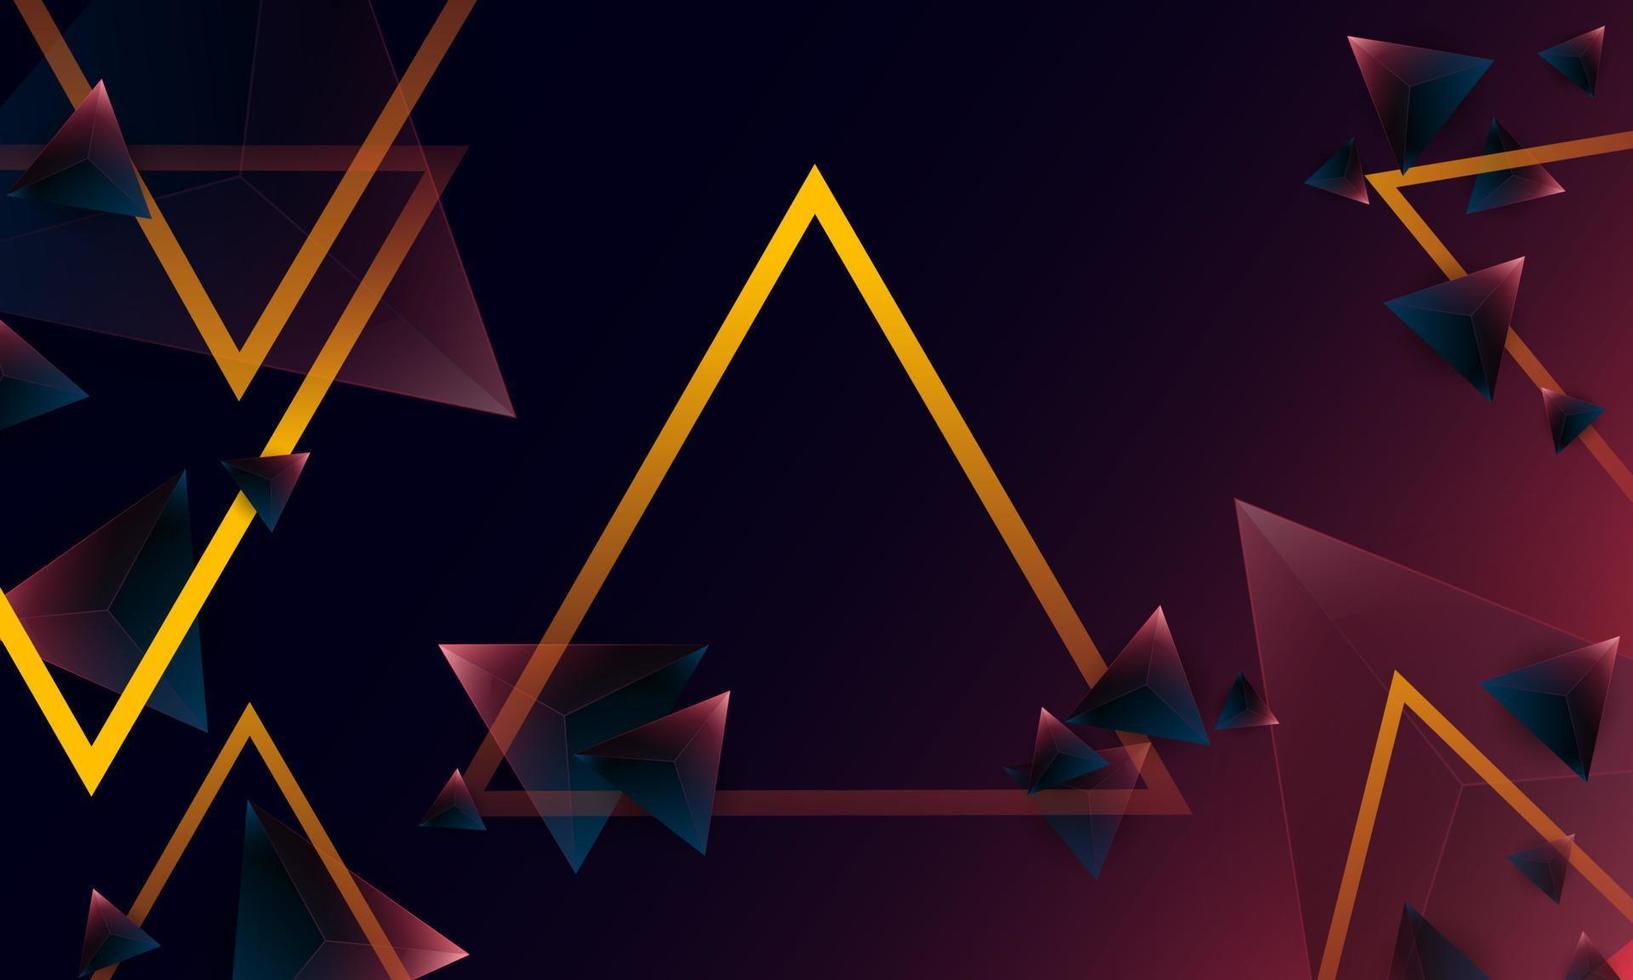 patrón de forma de triángulos de polígono púrpura oscuro abstracto en el fondo. concepto de tecnología digital de diseño vectorial de ilustración. vector